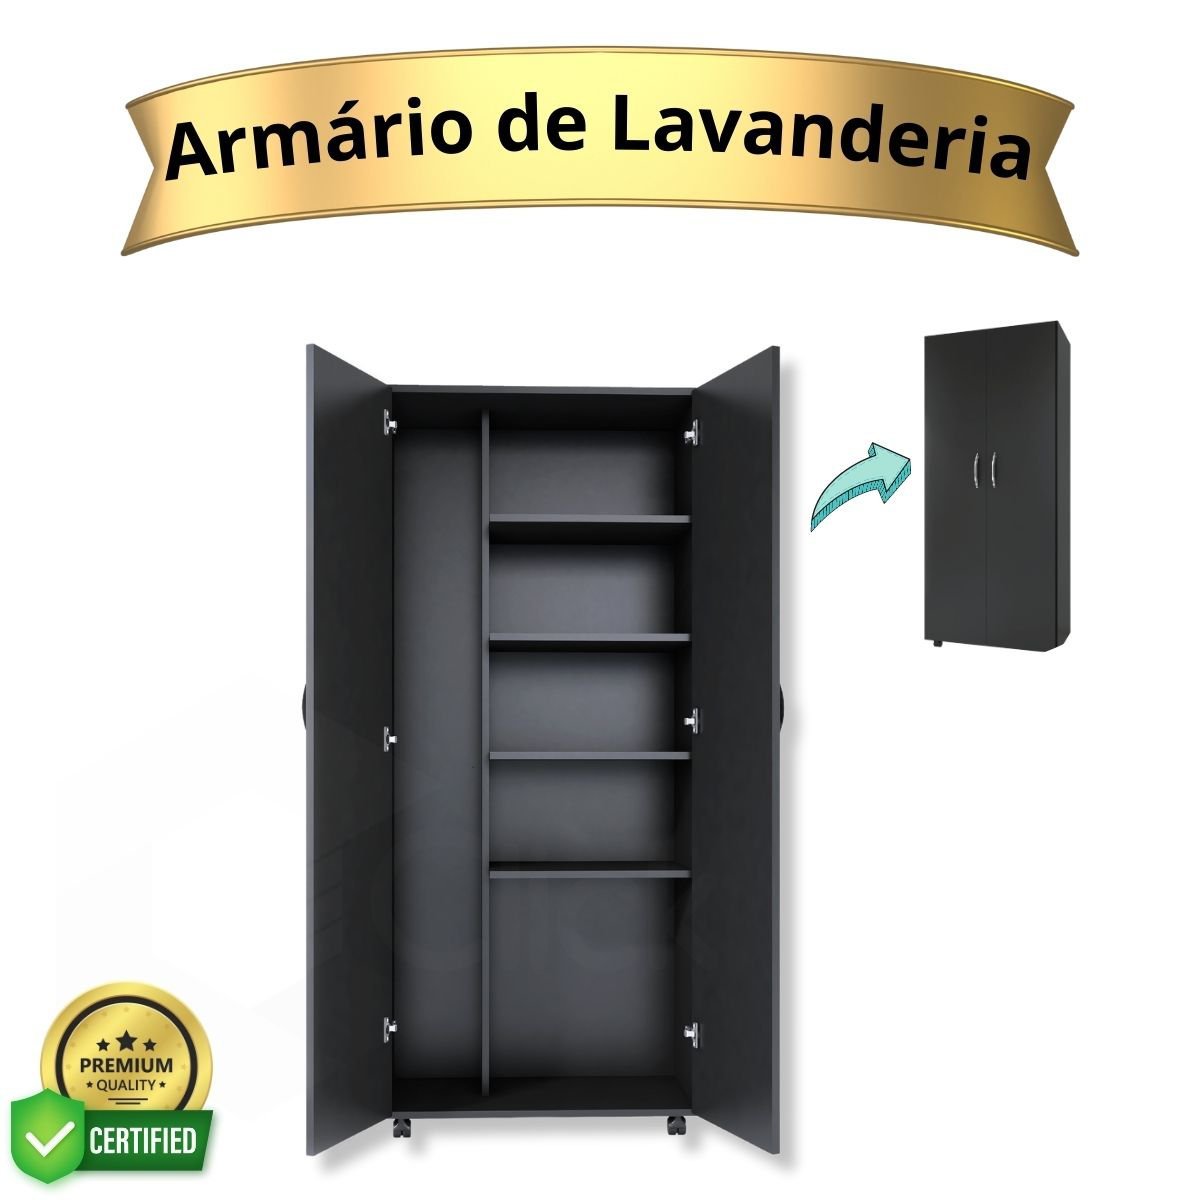 Armário Para Lavanderia Multiuso 2 Portas Alto Dispensa ClickForte Armário Lavanderia Preto - 8